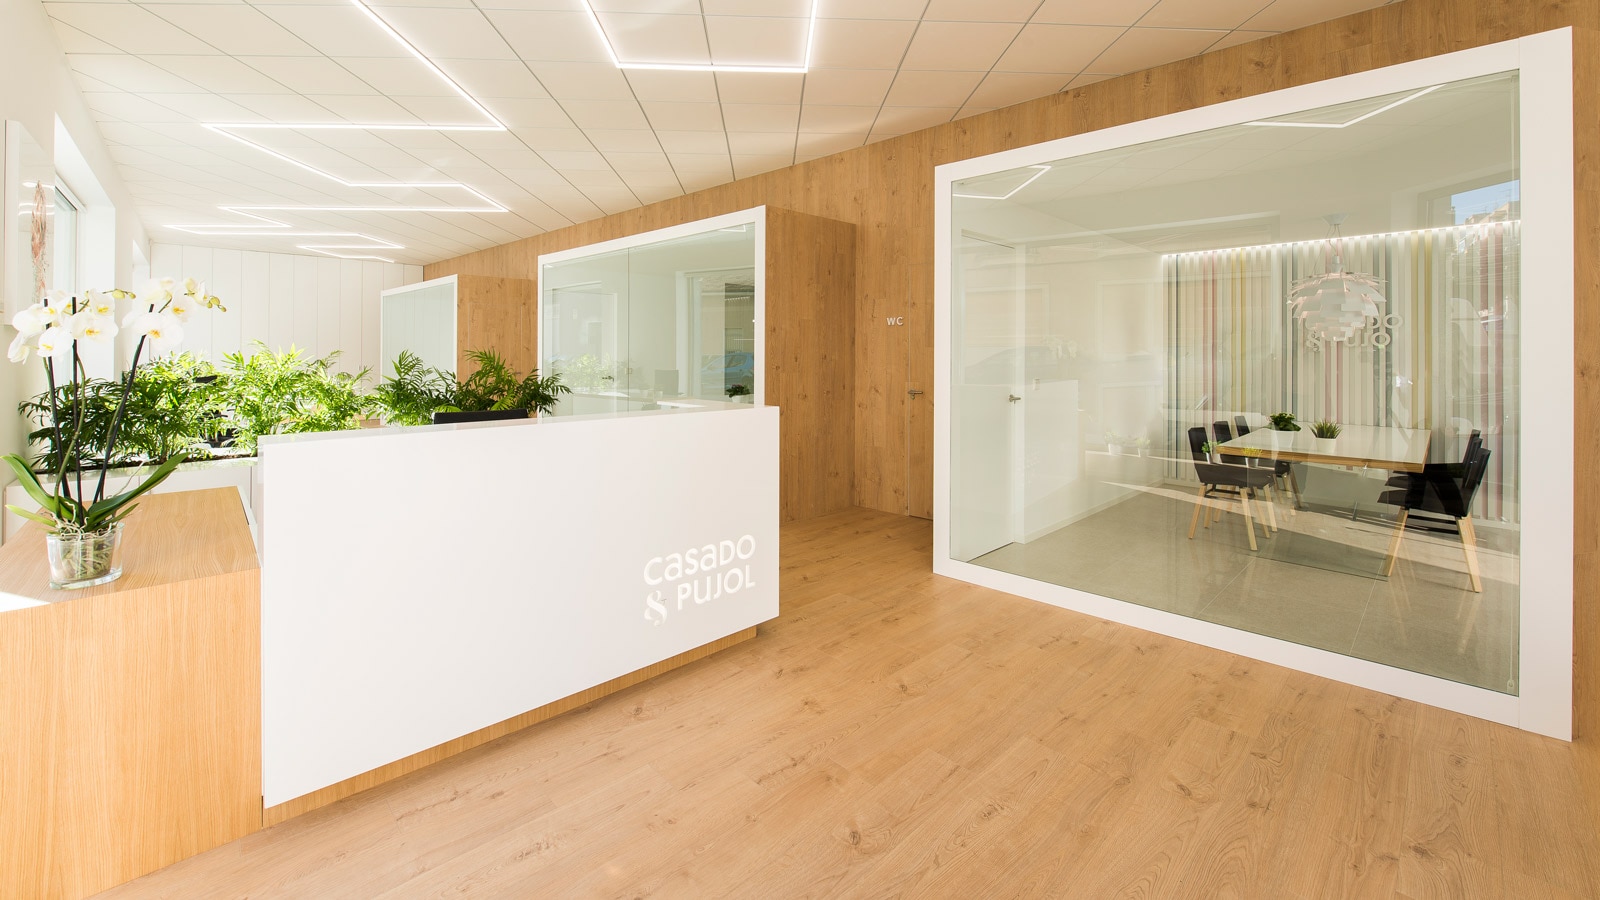 PORCELANOSA Grupo Projects: Il nuovo look degli uffici Casado & Pujol nel più puro stile japandi